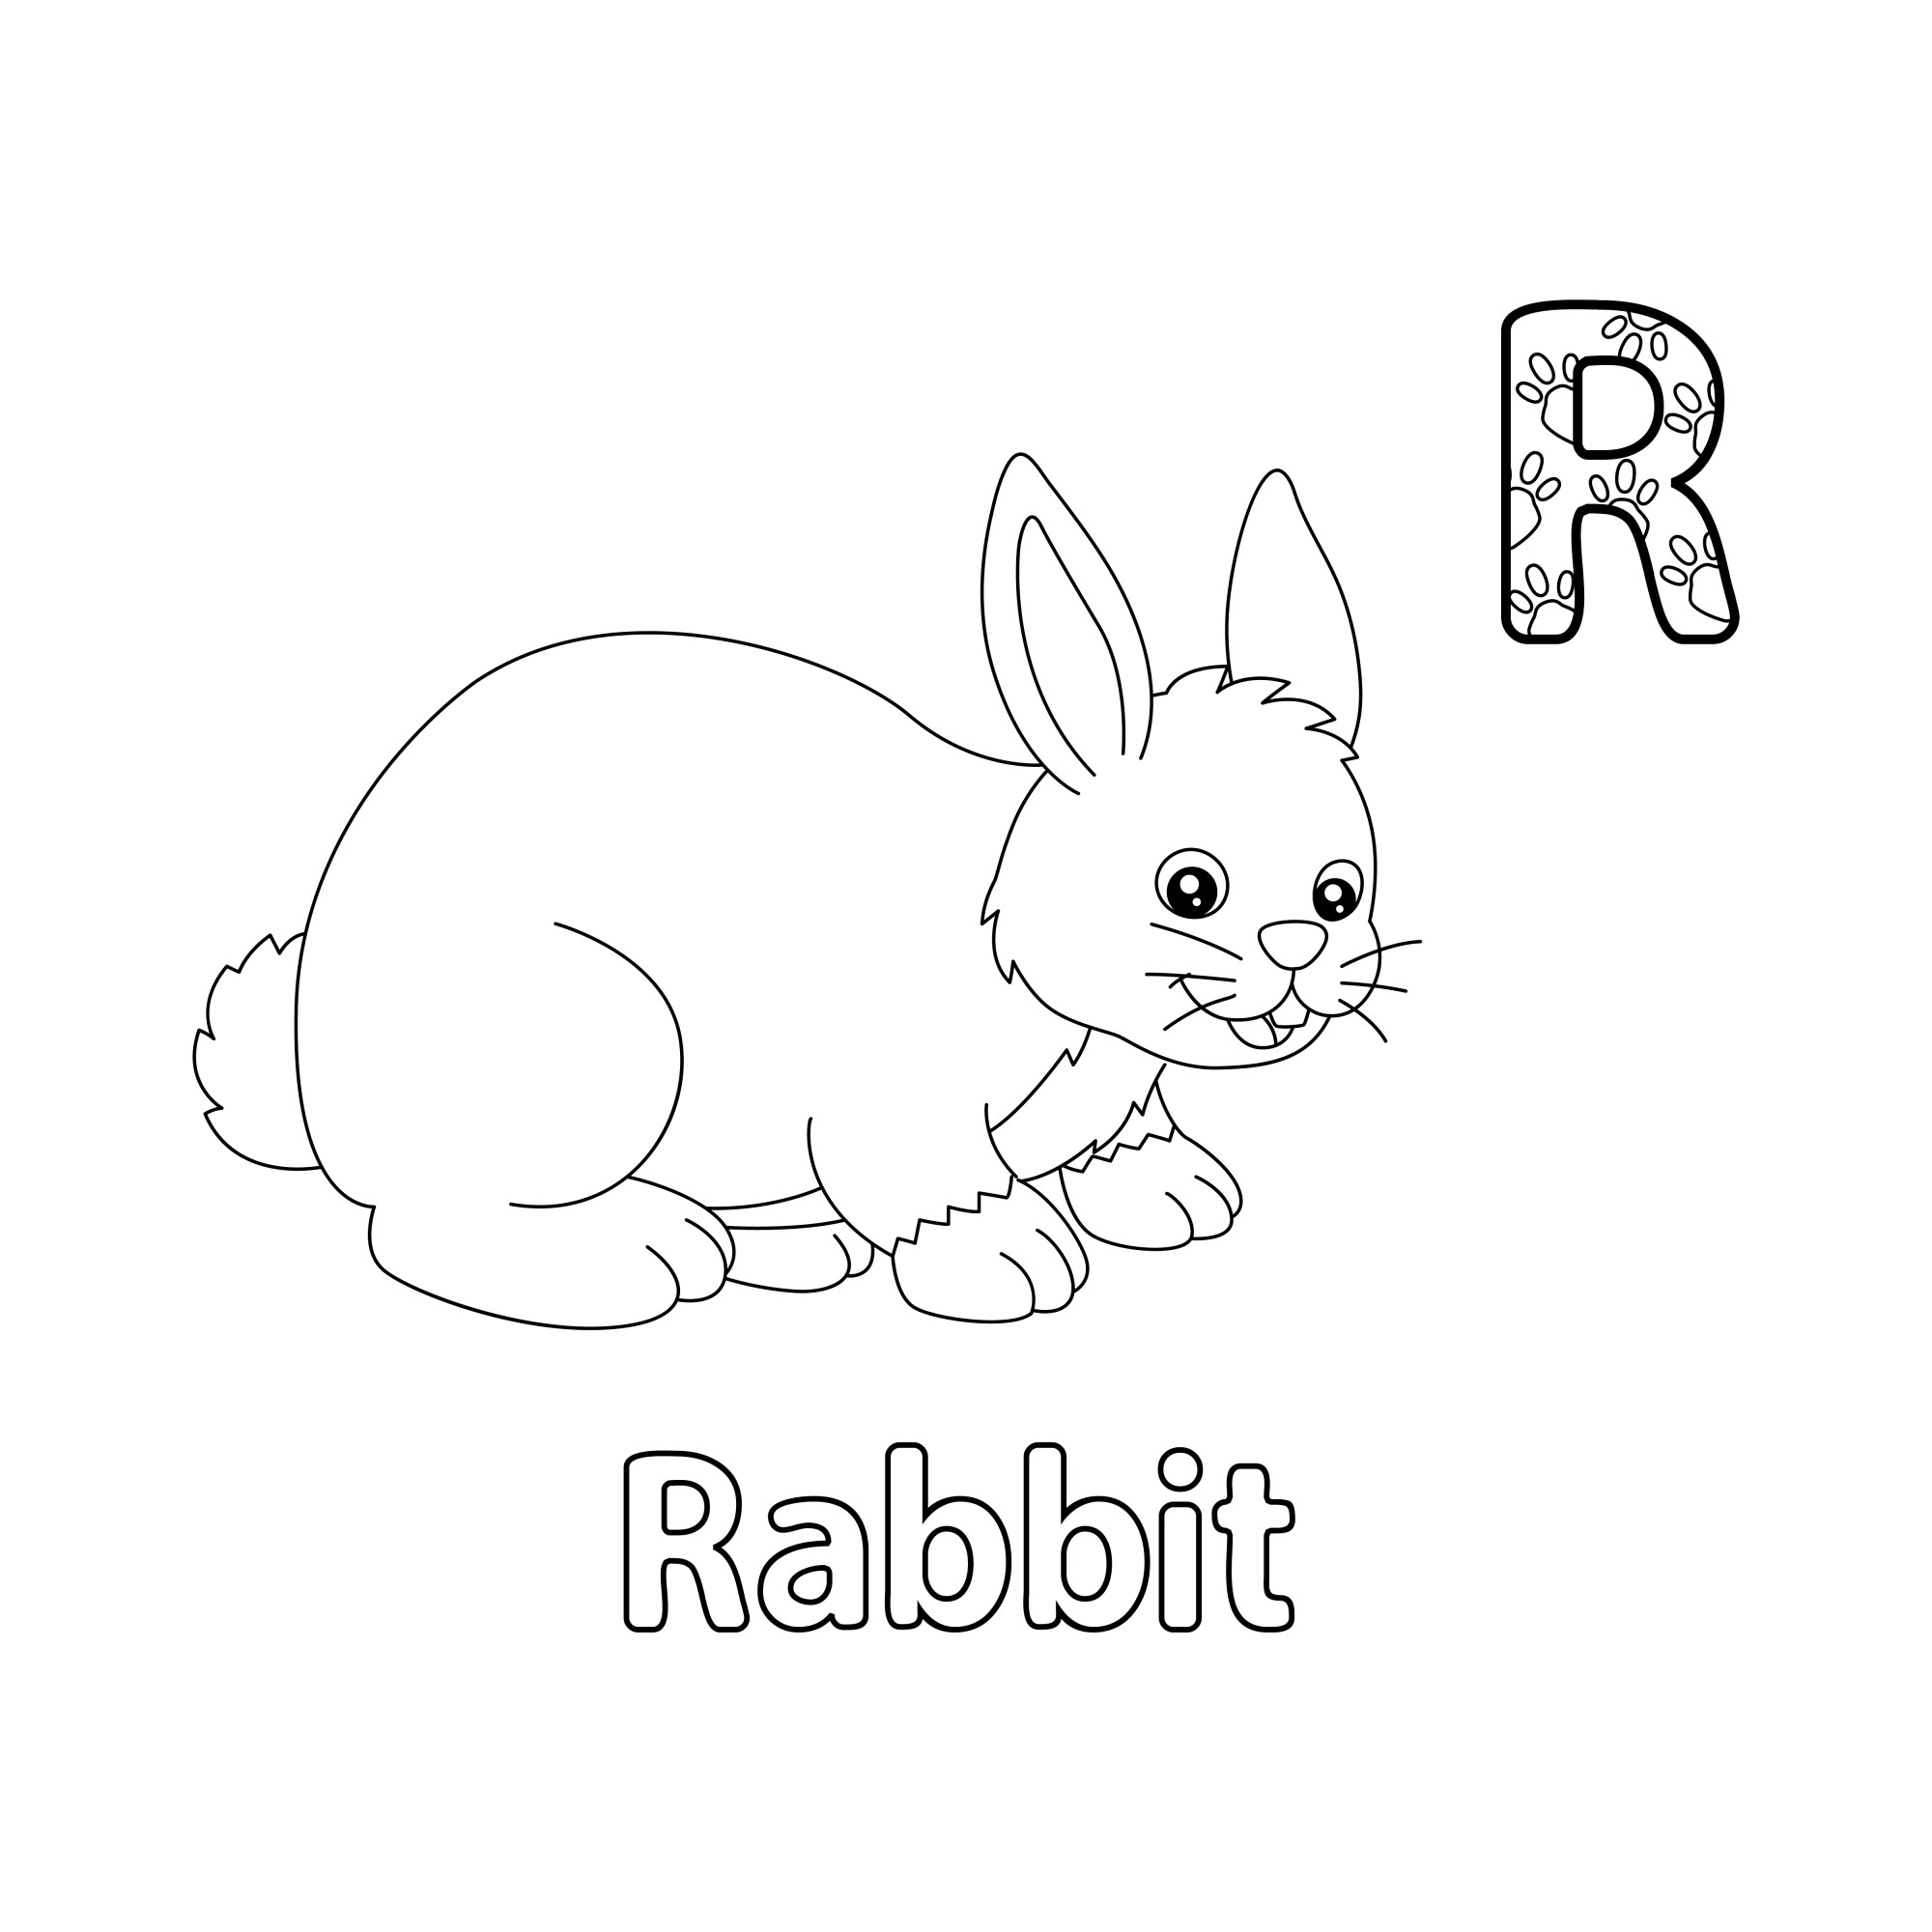 Раскраска для детей: буква R английского алфавита